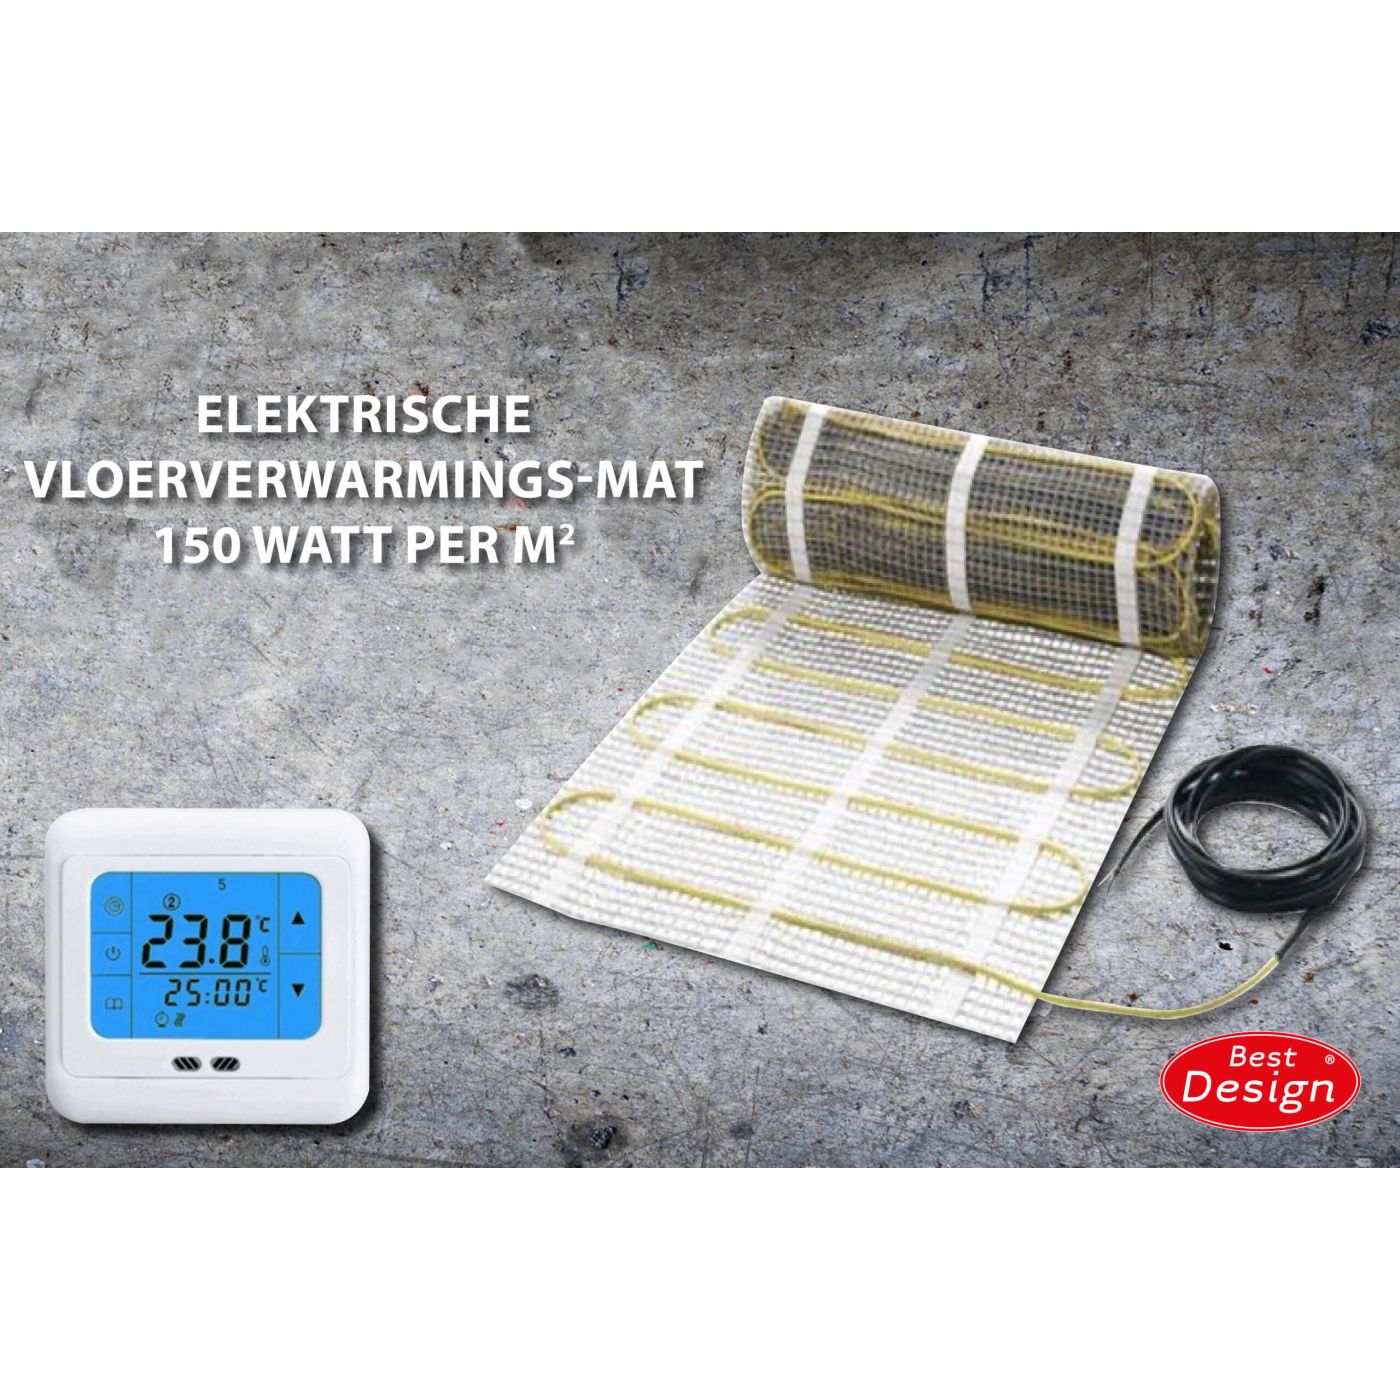 Best Design Comfort elektrische vloerverwarming mat 7.0m2